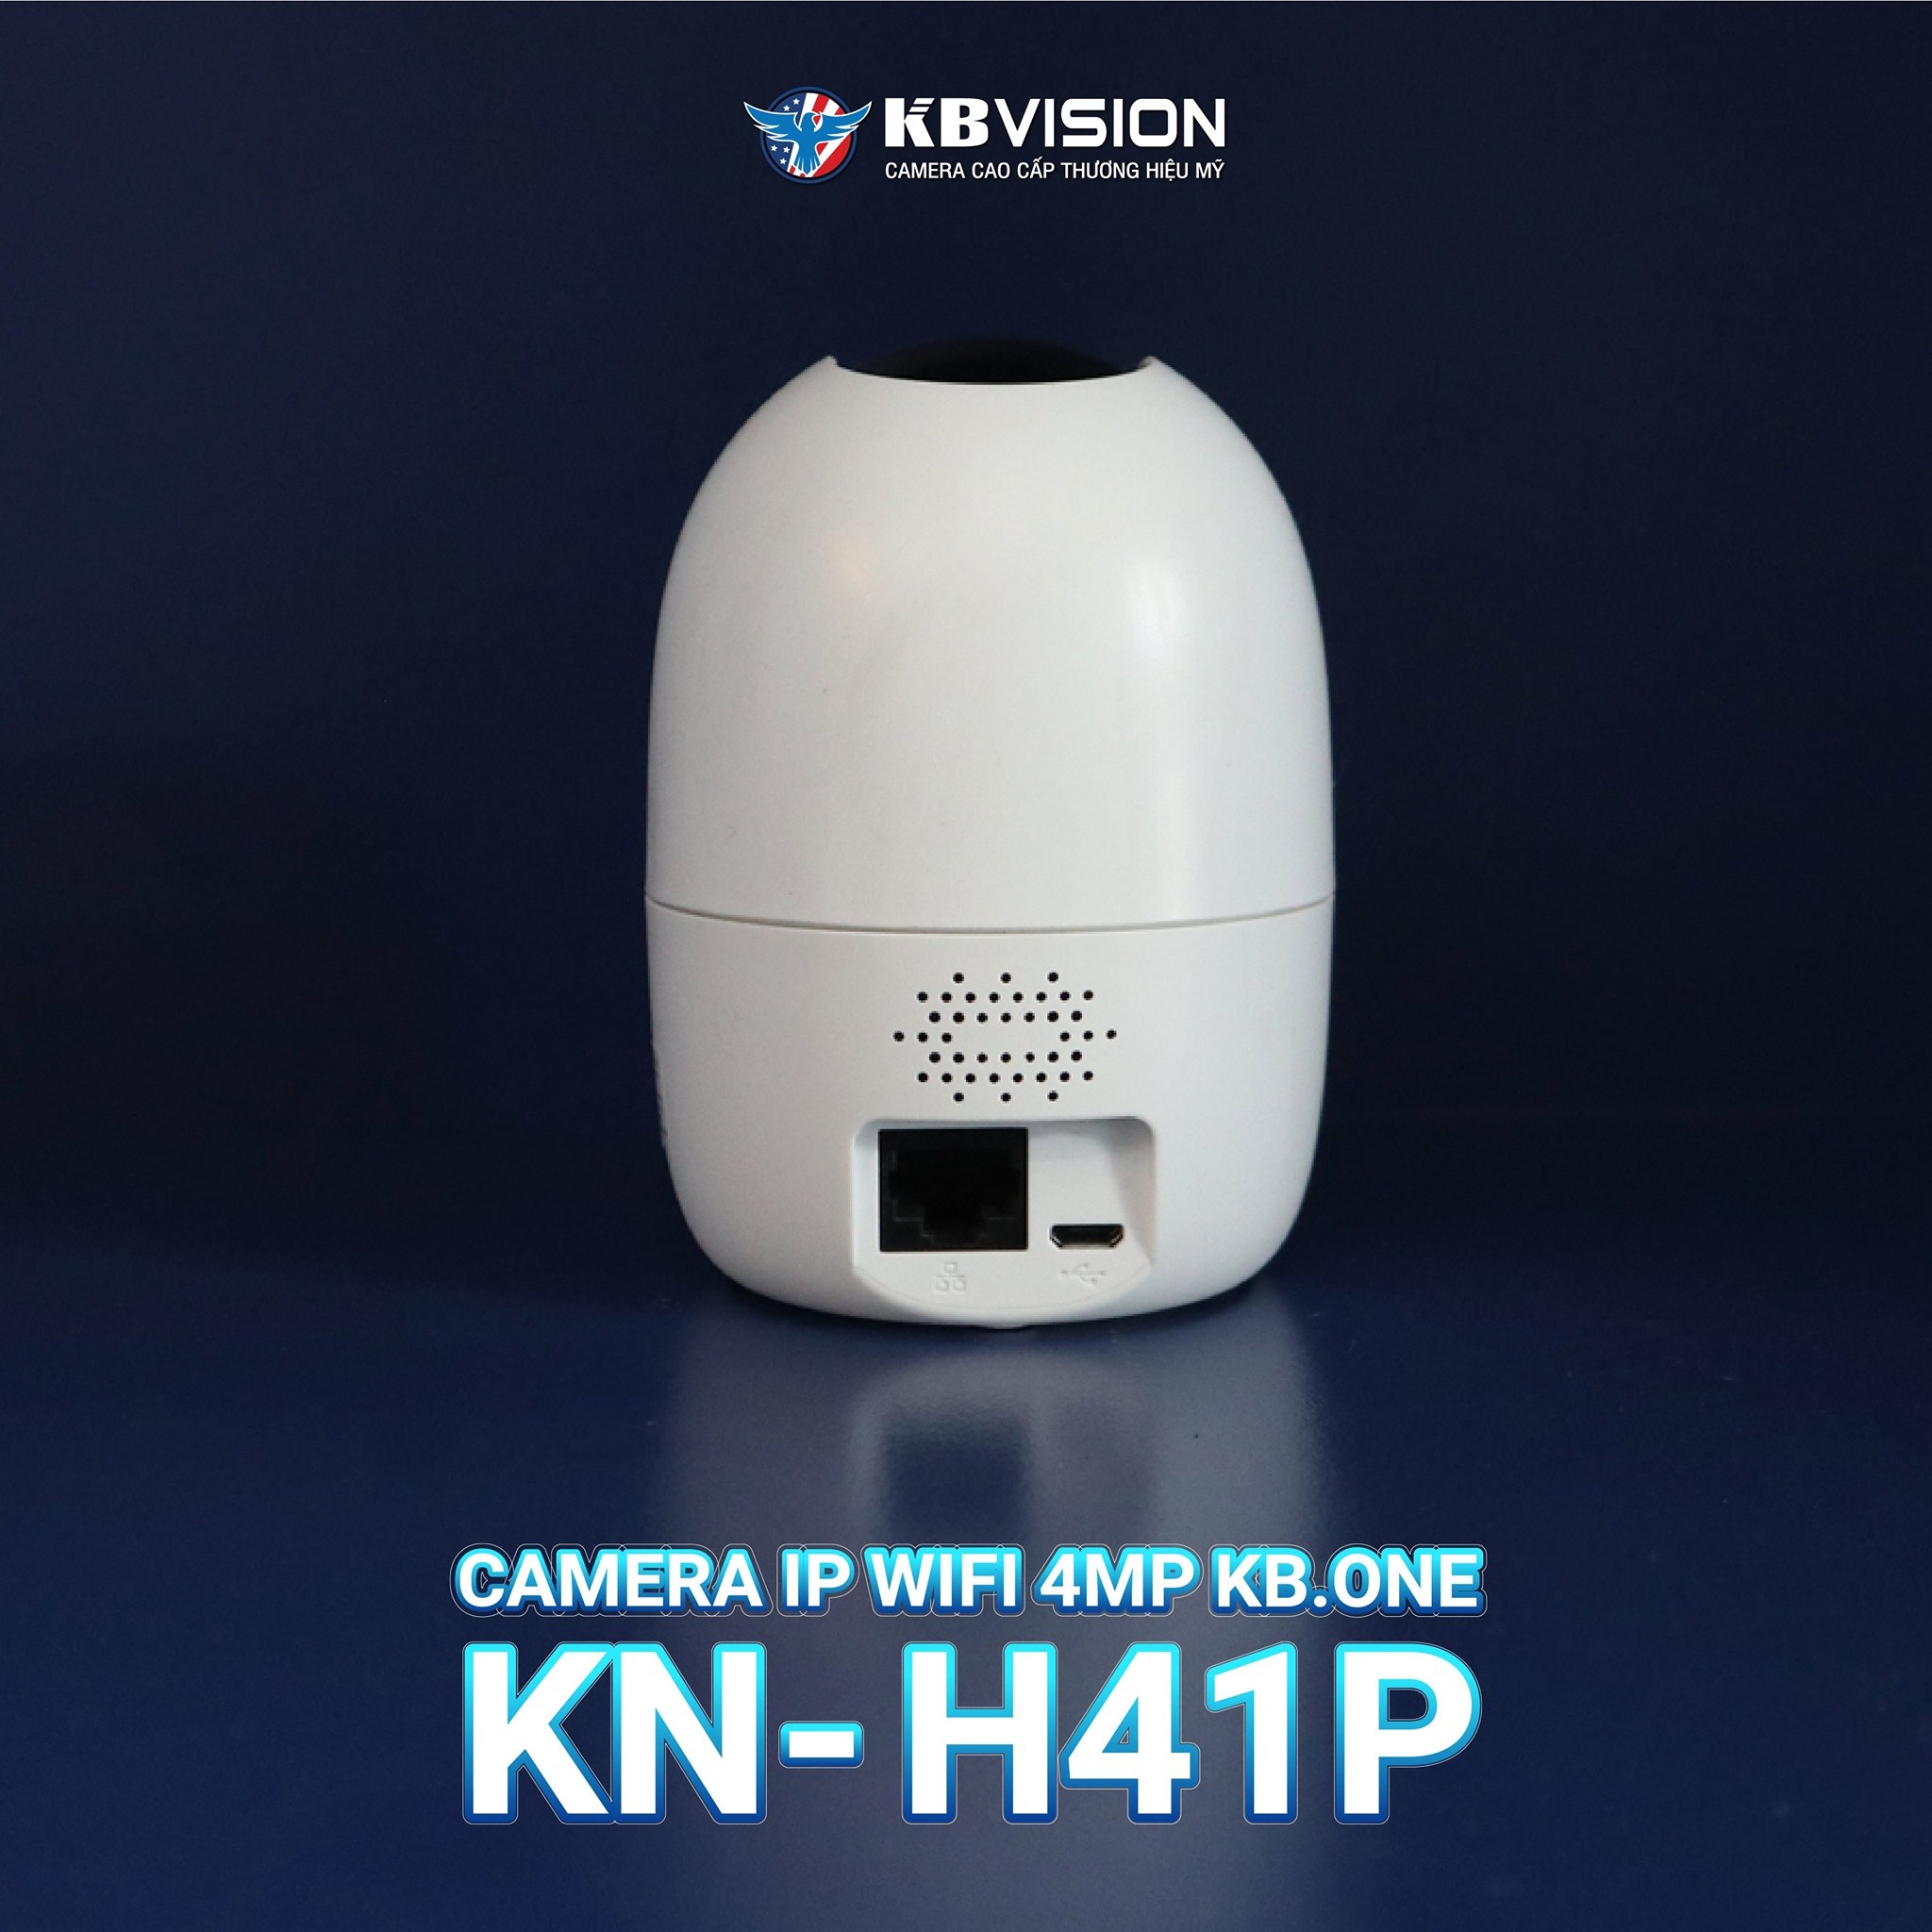 Camera Wifi không dây KBONE KN-H41P 4MP , xoay 360 độ, nói chuyện 2 chiều